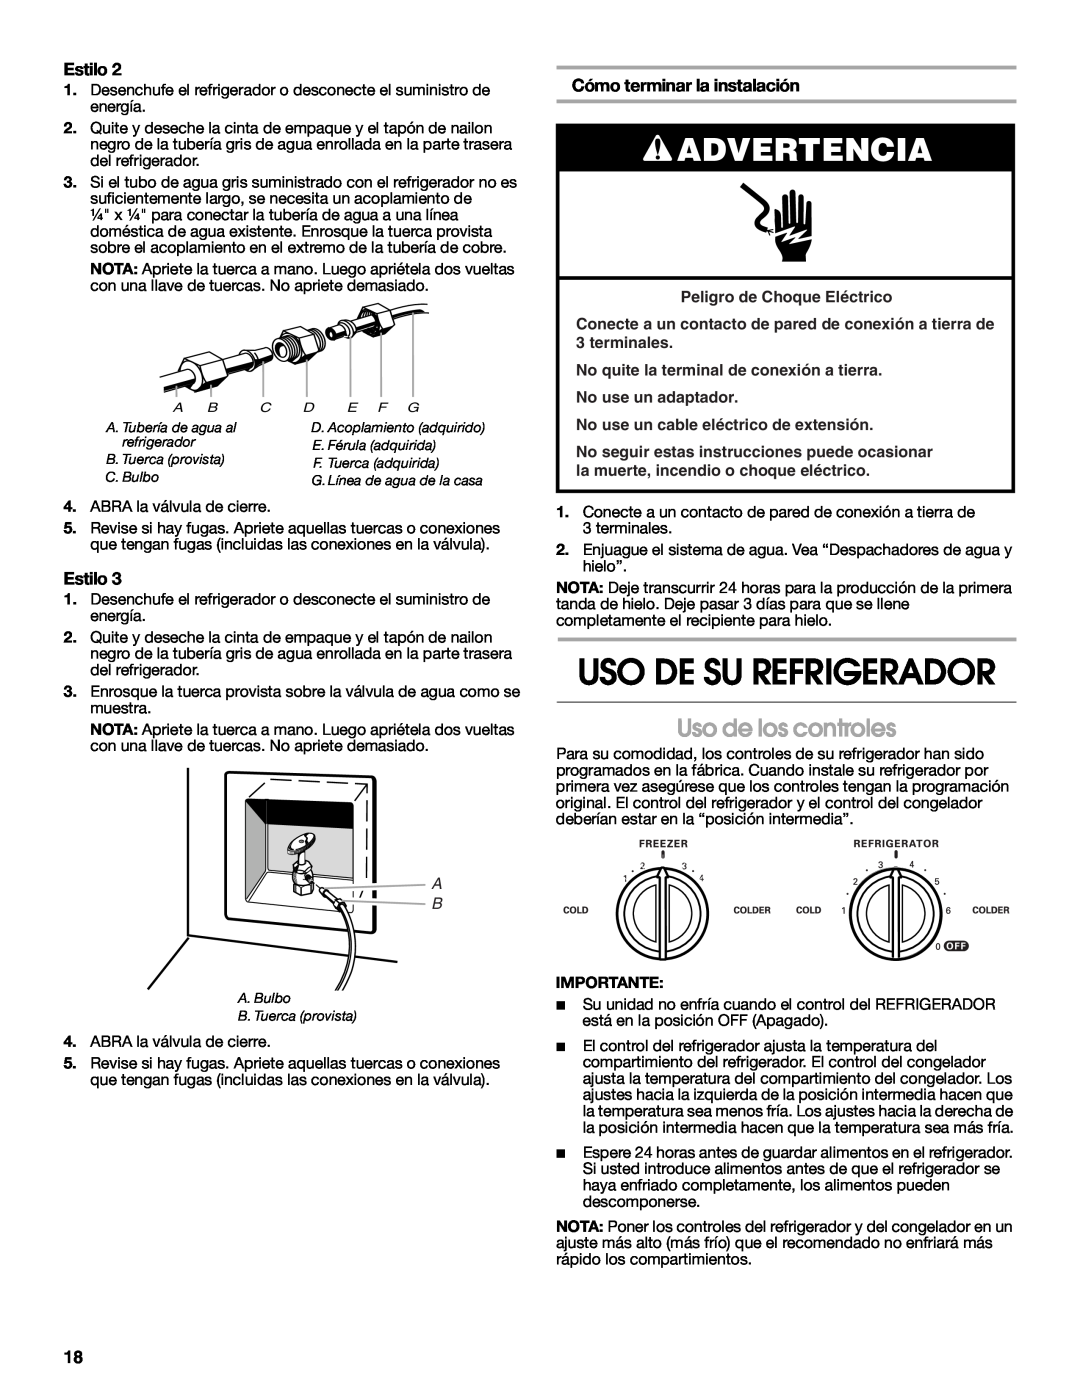 Whirlpool RS22AQXKQ00 Uso De Su Refrigerador, Uso de los controles, Advertencia, Estilo, Cómo terminar la instalación 